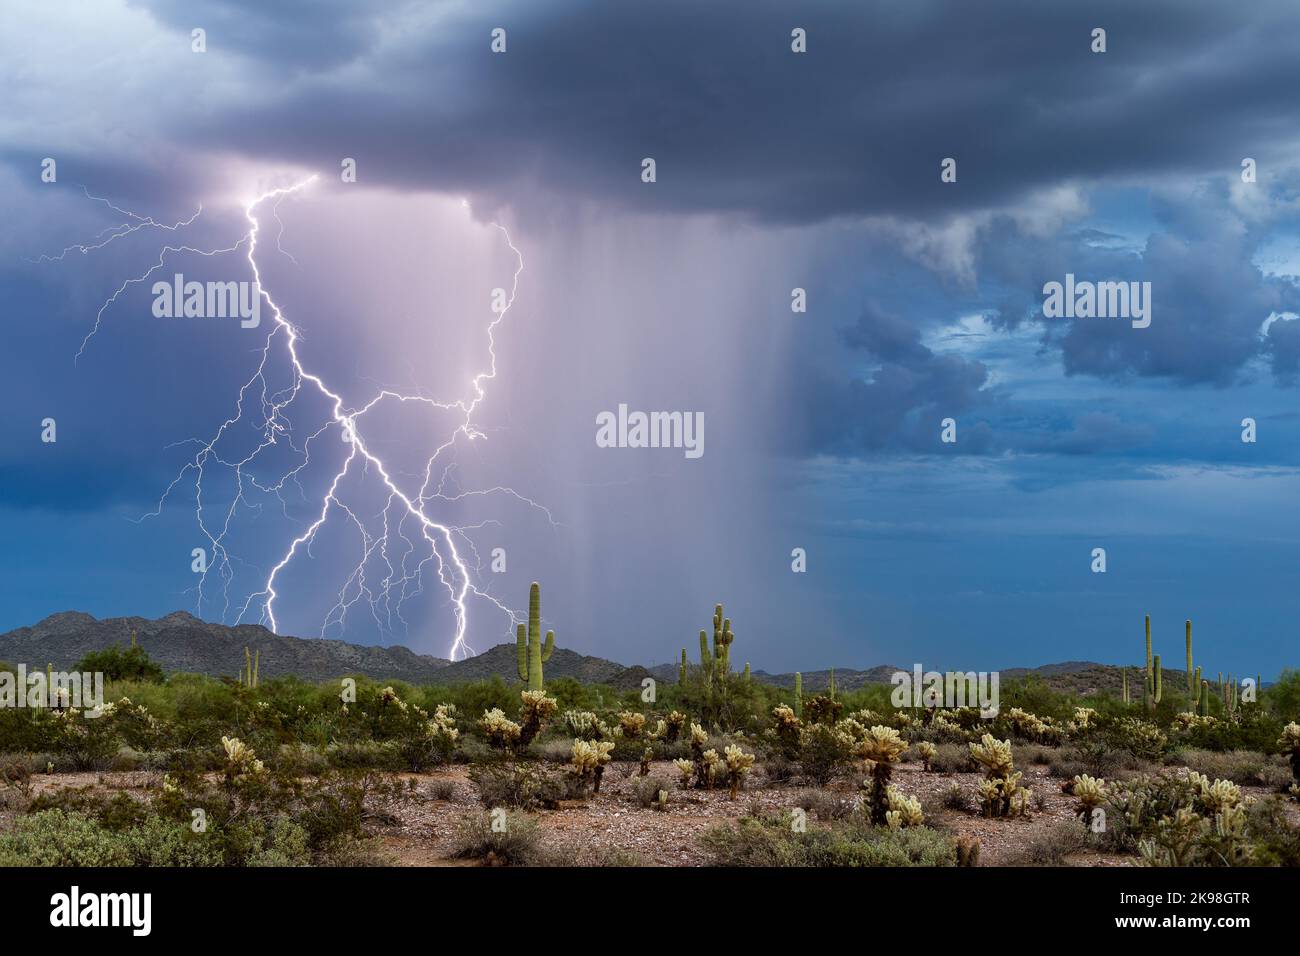 Monsunsturm mit Blitz in der Wüste von Arizona Stockfoto